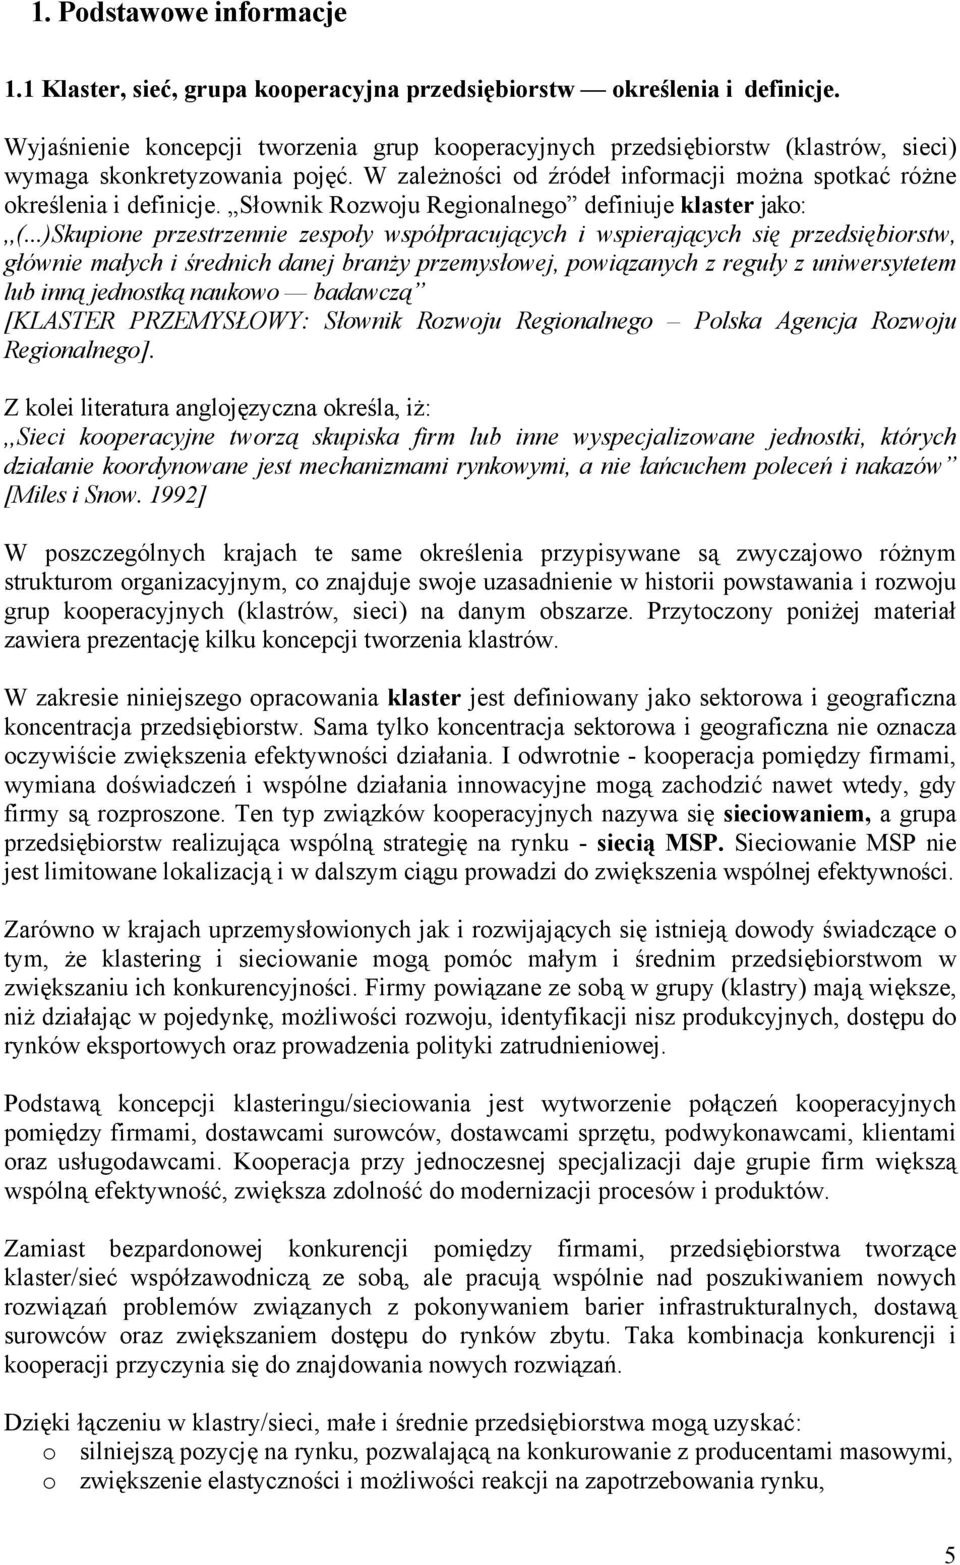 Słownik Rozwoju Regionalnego definiuje klaster jako:,,(.